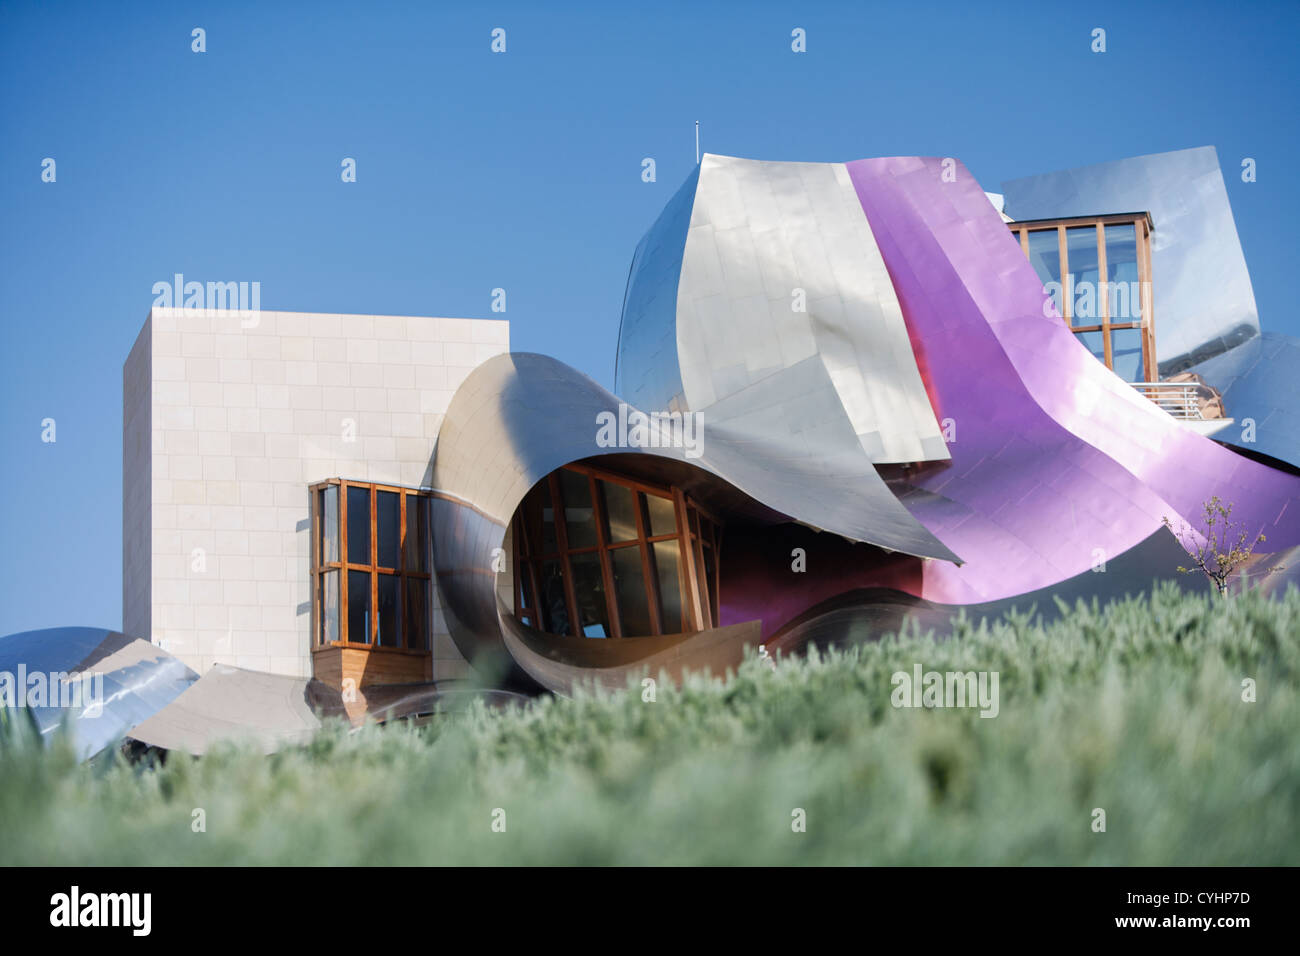 Hotel Marques de Riscal  (designed by Frank Gehry ) at El Ciego, Rioja Alavesa, Alava, Pais Vasco, Spain Stock Photo